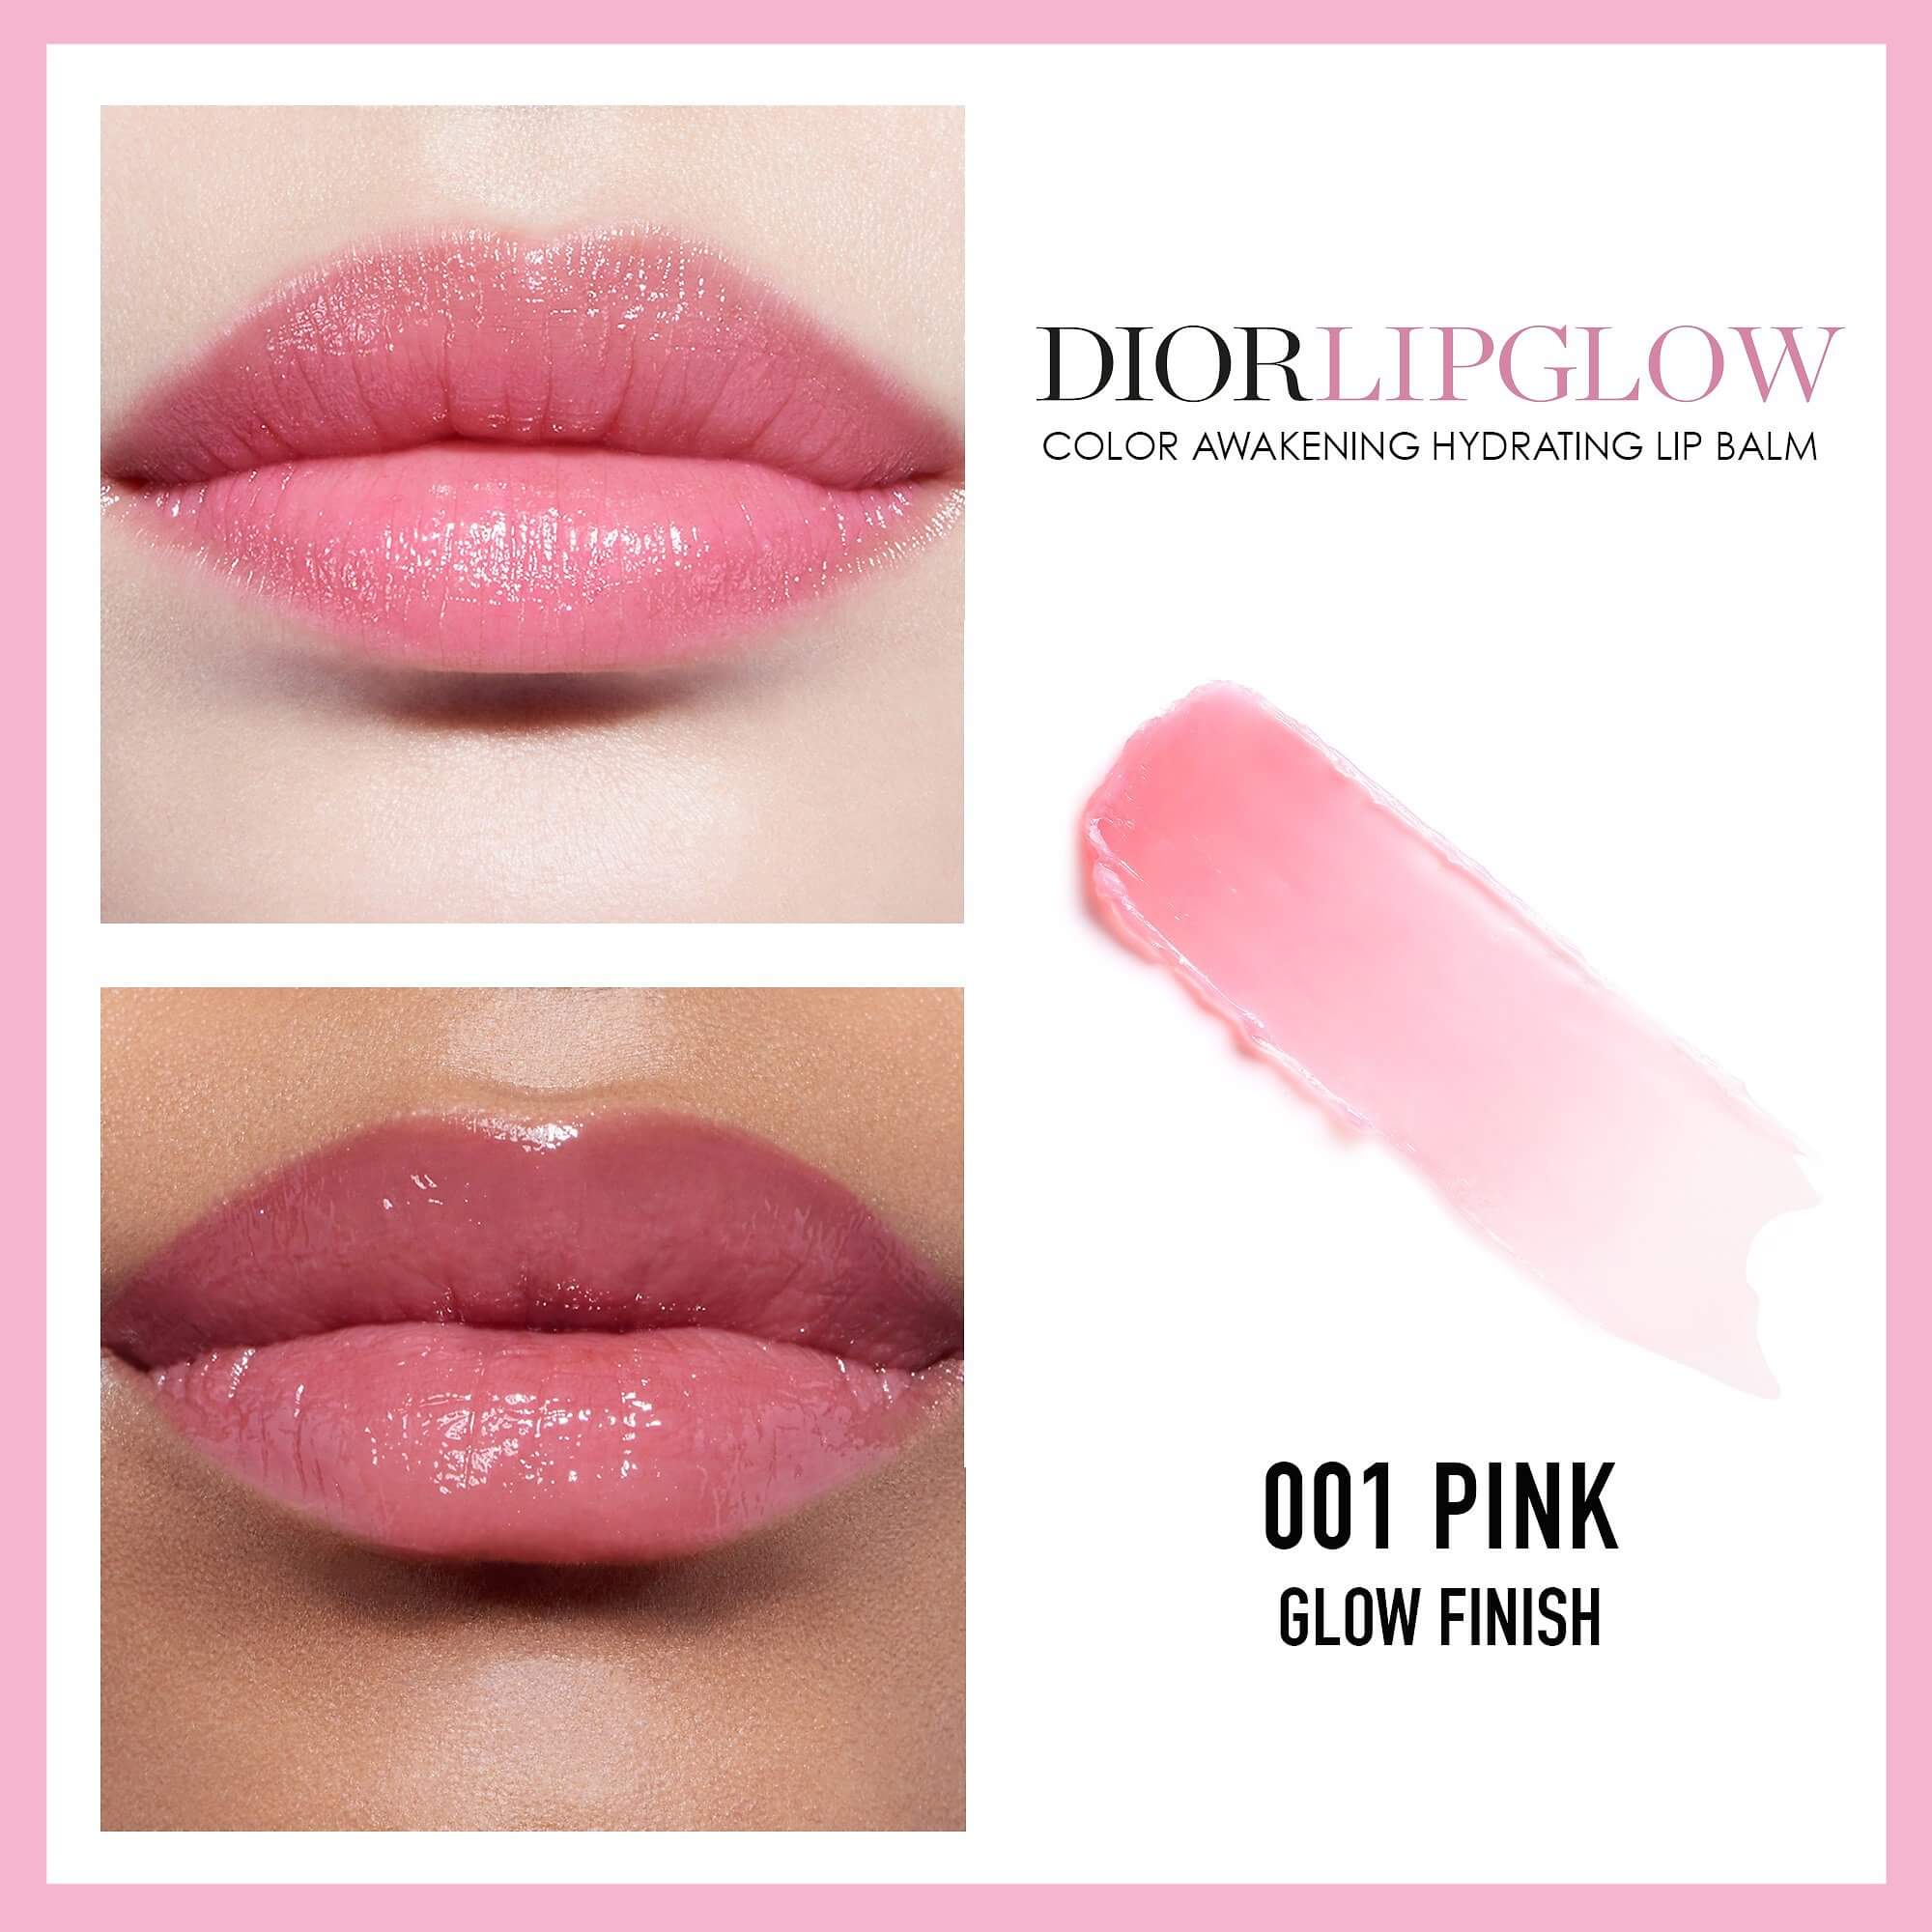 Son Dưỡng Dior Lip Glow Oil  001 Pink  Mỹ phẩm hàng hiệu cao cấp USA UK   Ali Son Mac